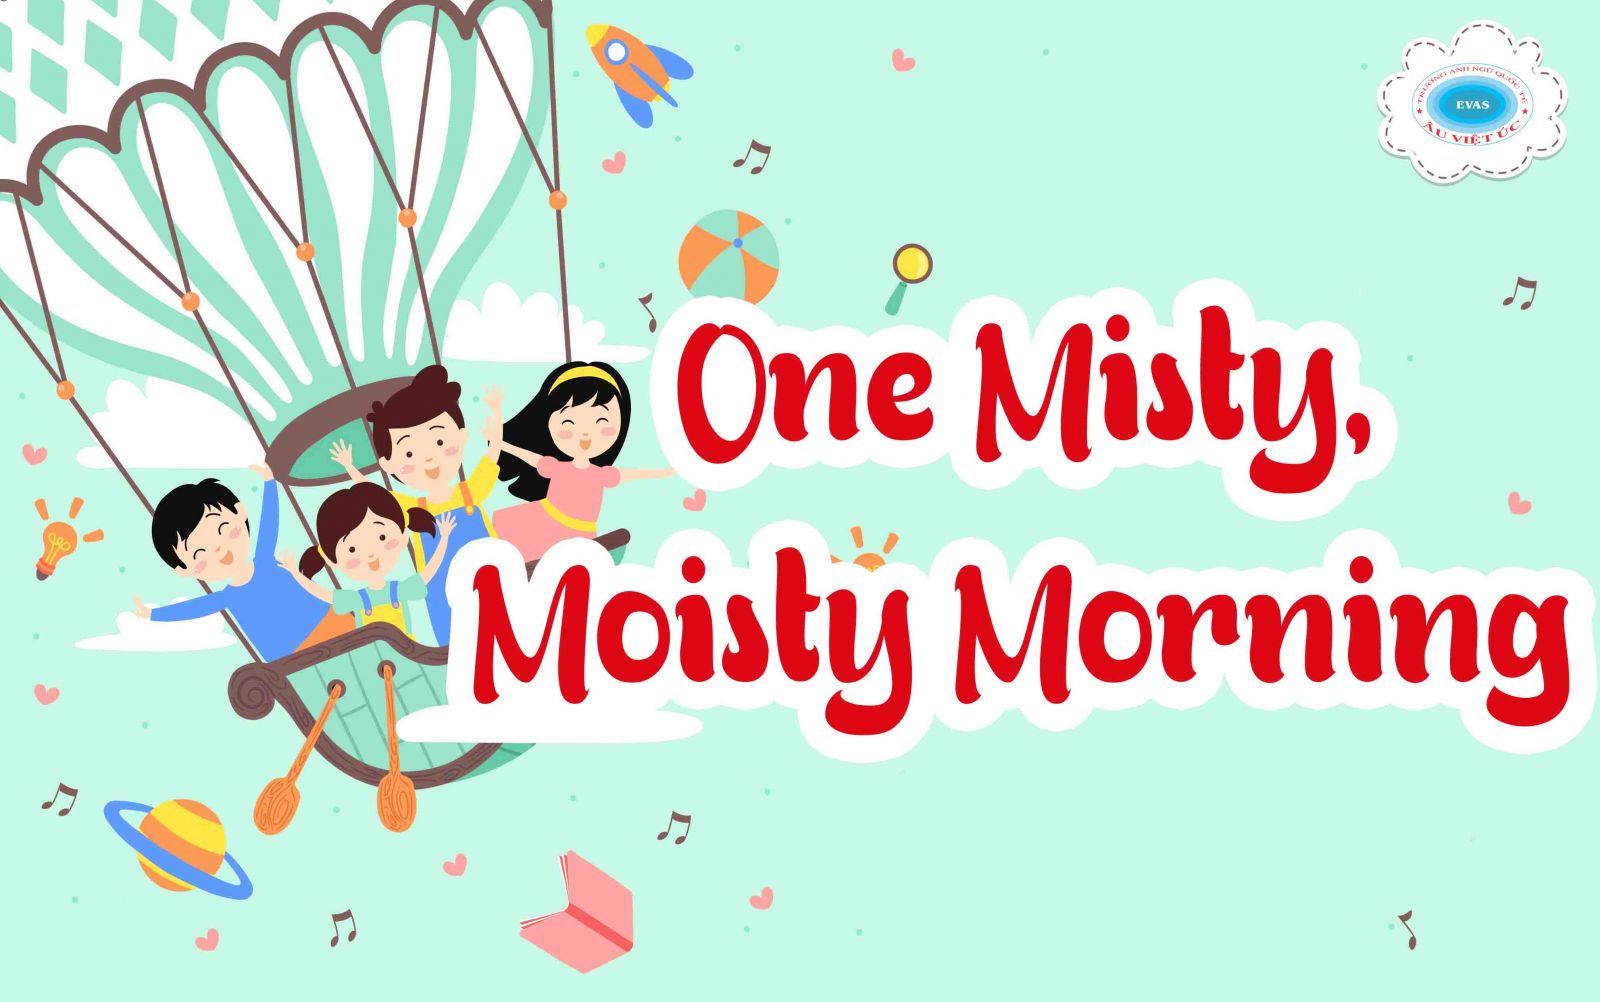 One Misty, Moisty Morning